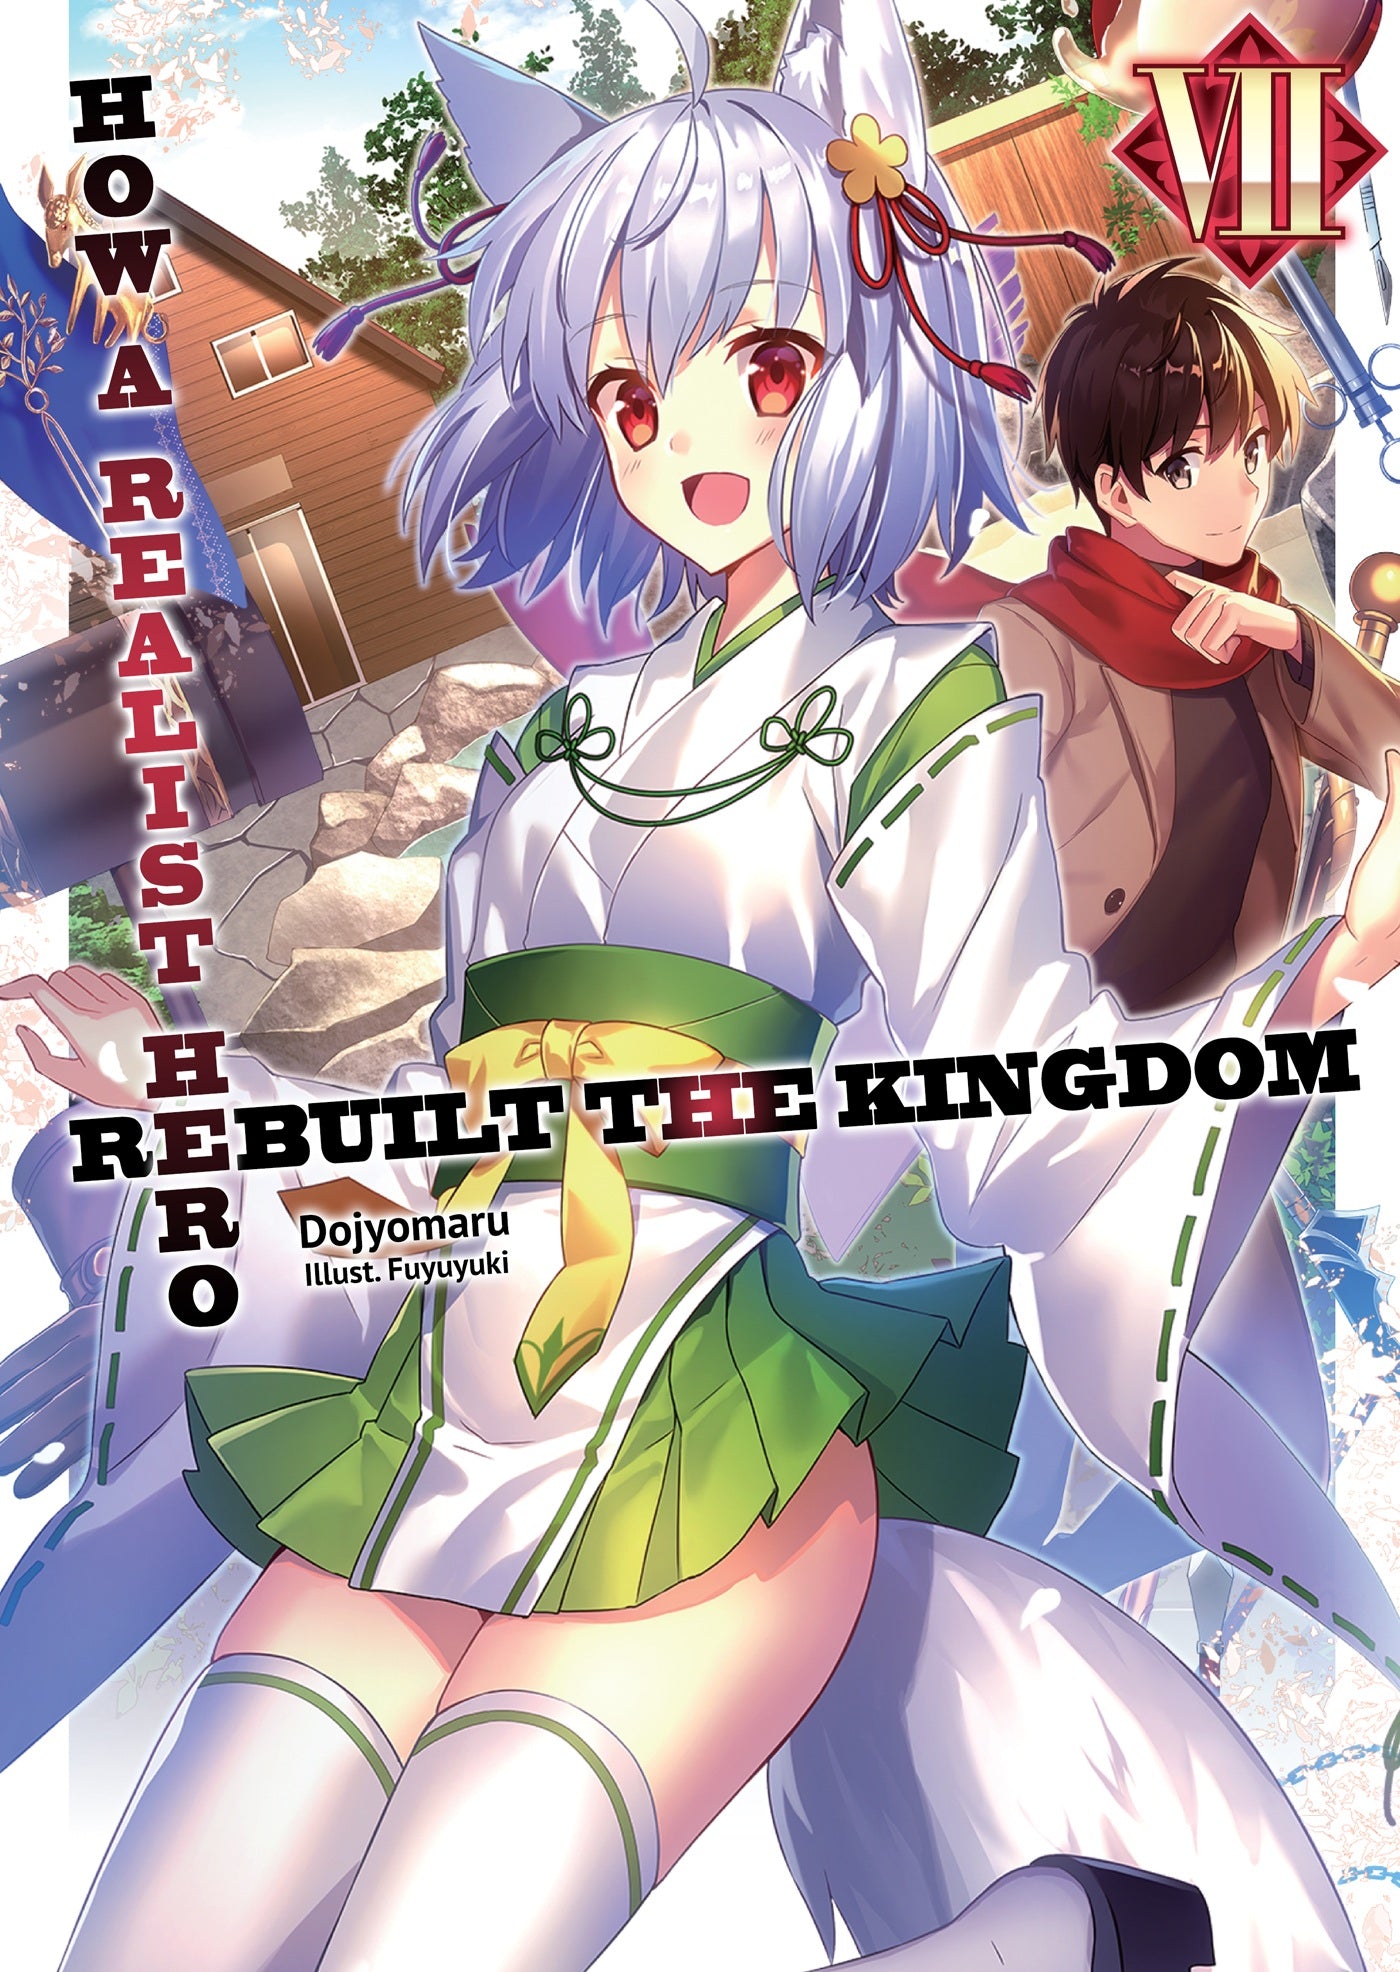 How a Realist Hero Rebuilt the Kingdom (Light Novel) Vol. 07